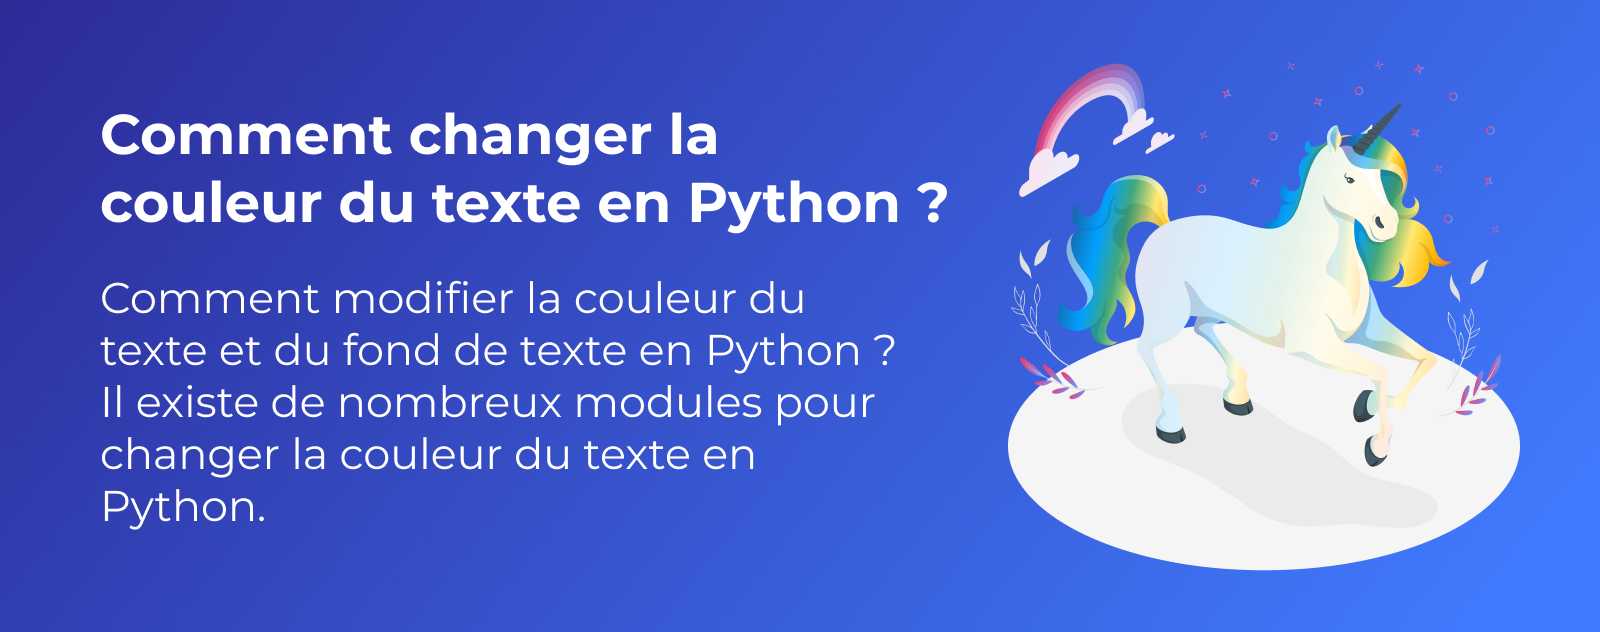 Comment changer la couleur du texte en Python ?